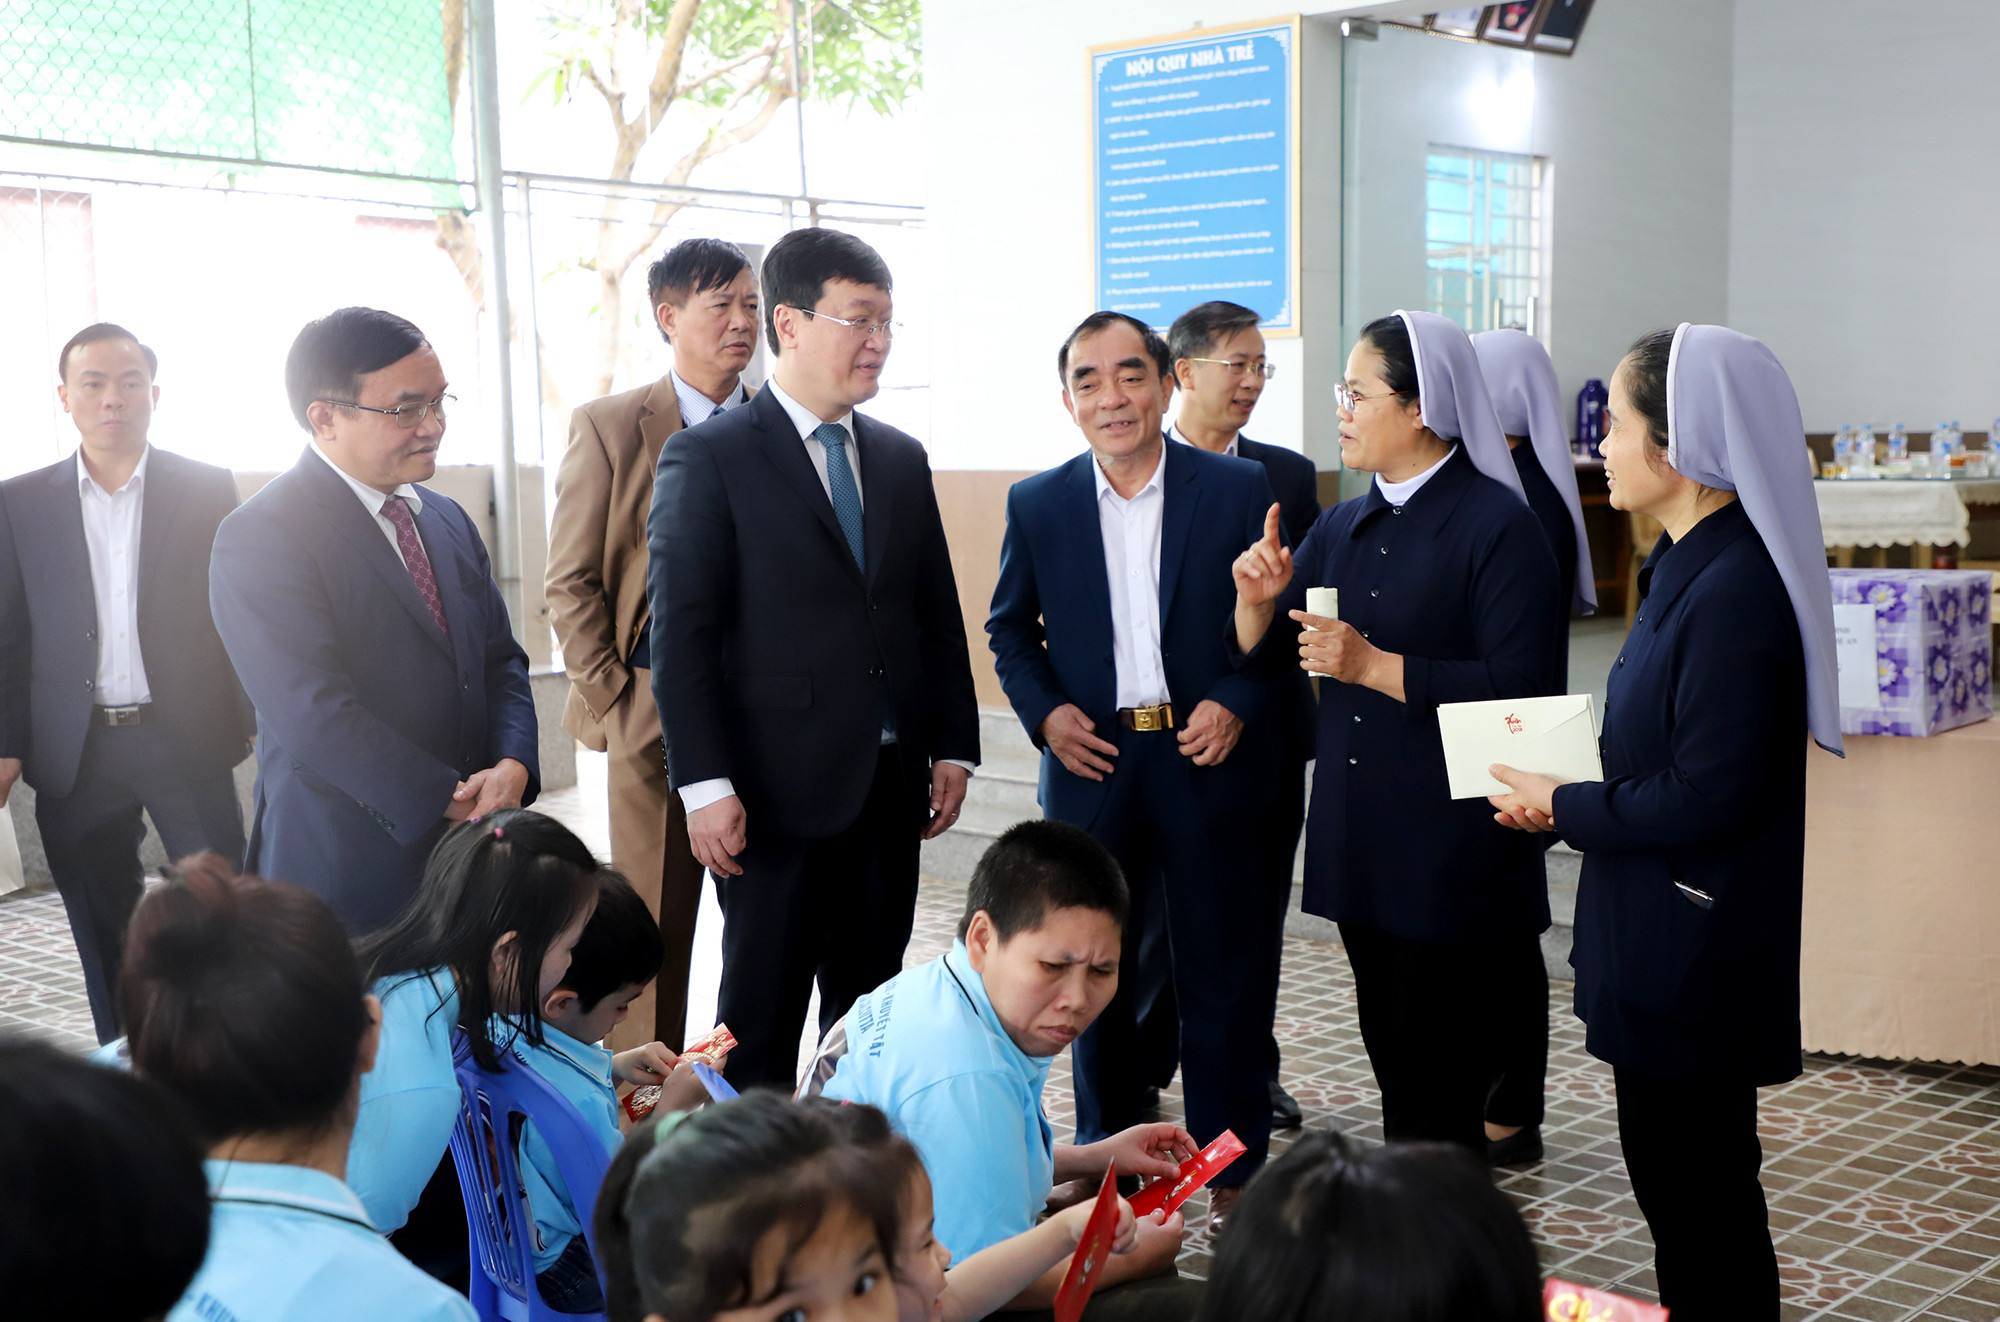 Đồng chí Nguyễn Đức Trung - Chủ tịch UBND tỉnh ân cần thăm hỏi hoàn cảnh, chia sẻ với những khó khăn của Trung tâm và các cháu tại Trung tâm. Ảnh: Phạm Bằng